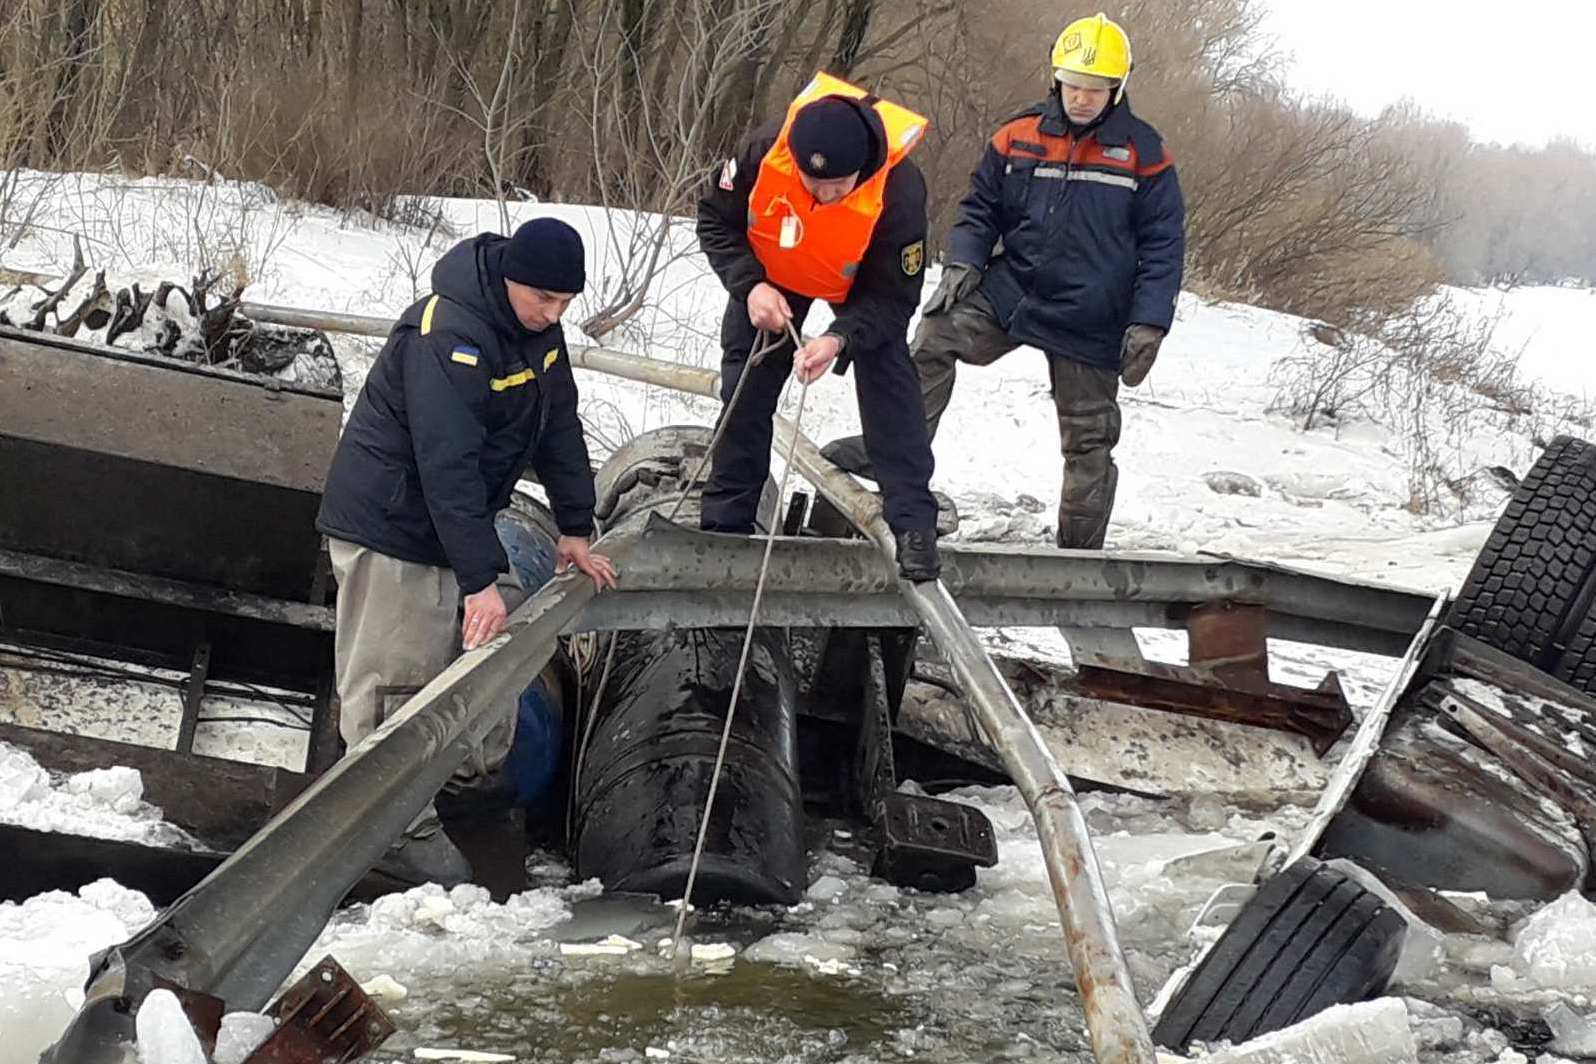 Чернігівська область: рятувальники проводять пошуки тіла загиблого водія та роботи з вилучення вантажного автомобіля, що упав з мосту у річку Десна